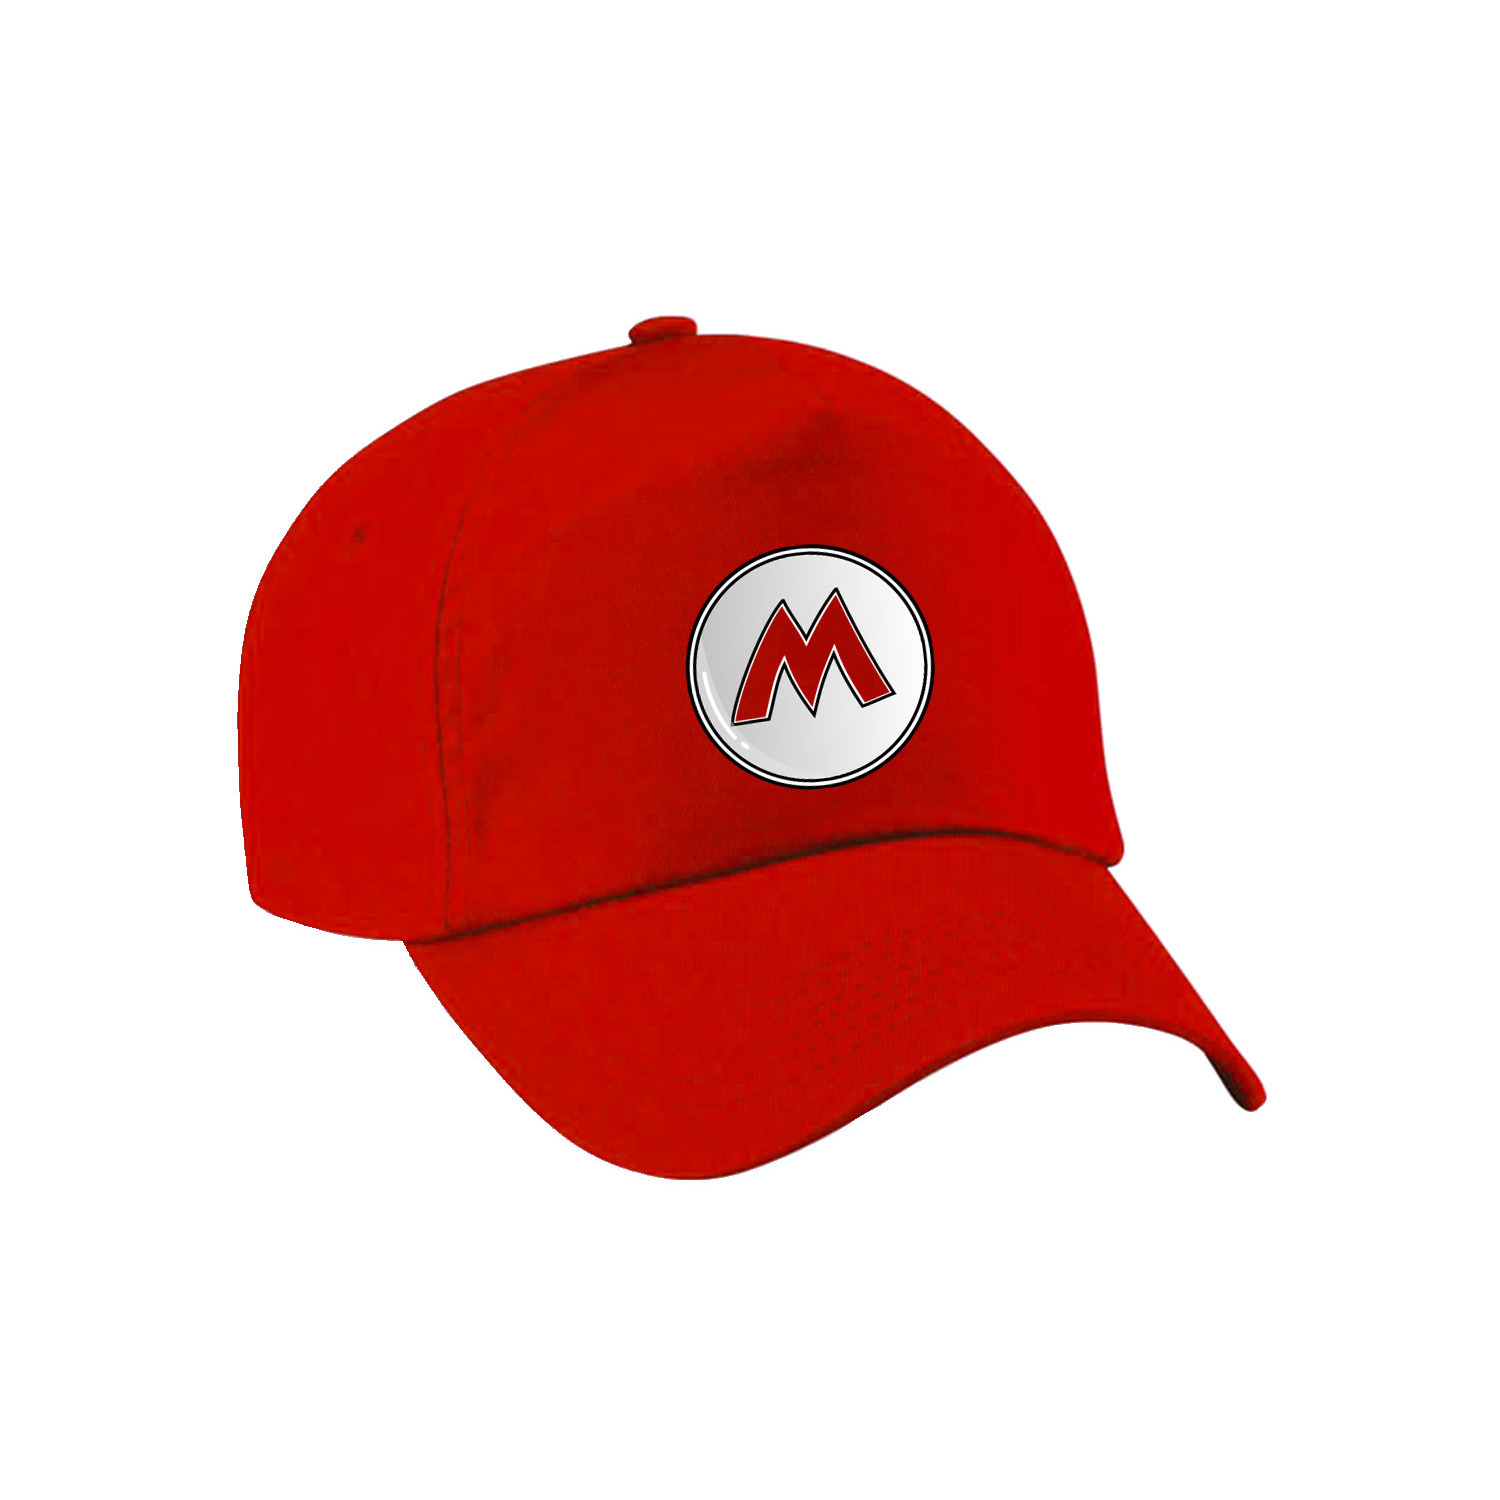 Afbeelding van Game verkleed pet - loodgieter Mario - rood - volwassenen - unisex - carnaval/themafeest outfit